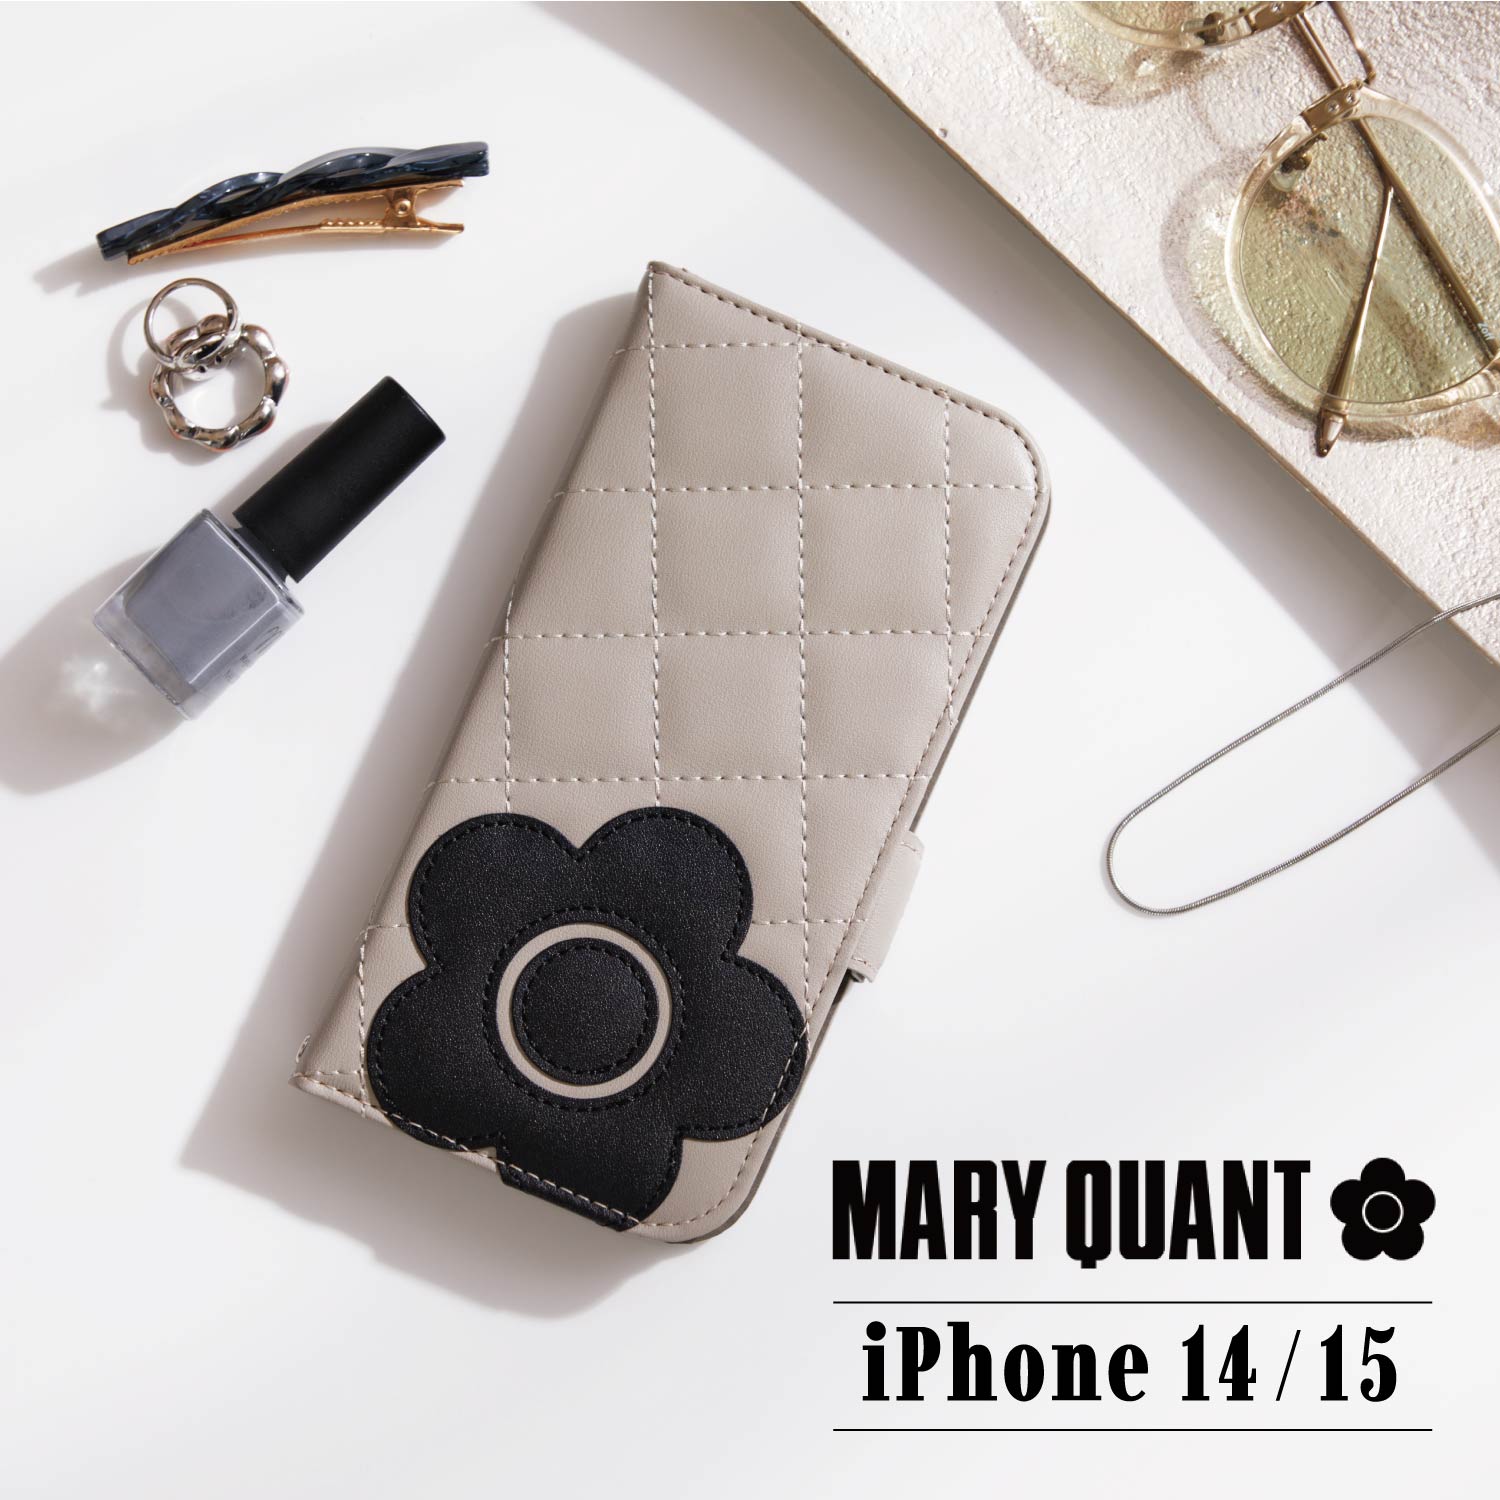 マリークヮント スマホケース レディース マリークヮント MARY QUANT iPhone 15 14 ケース スマホケース 携帯 レディース スタンド PU QUILT LEATHER BOOK TYPE CASE ブラック ホワイト グレー ブラウン ピンク 黒 白 母の日